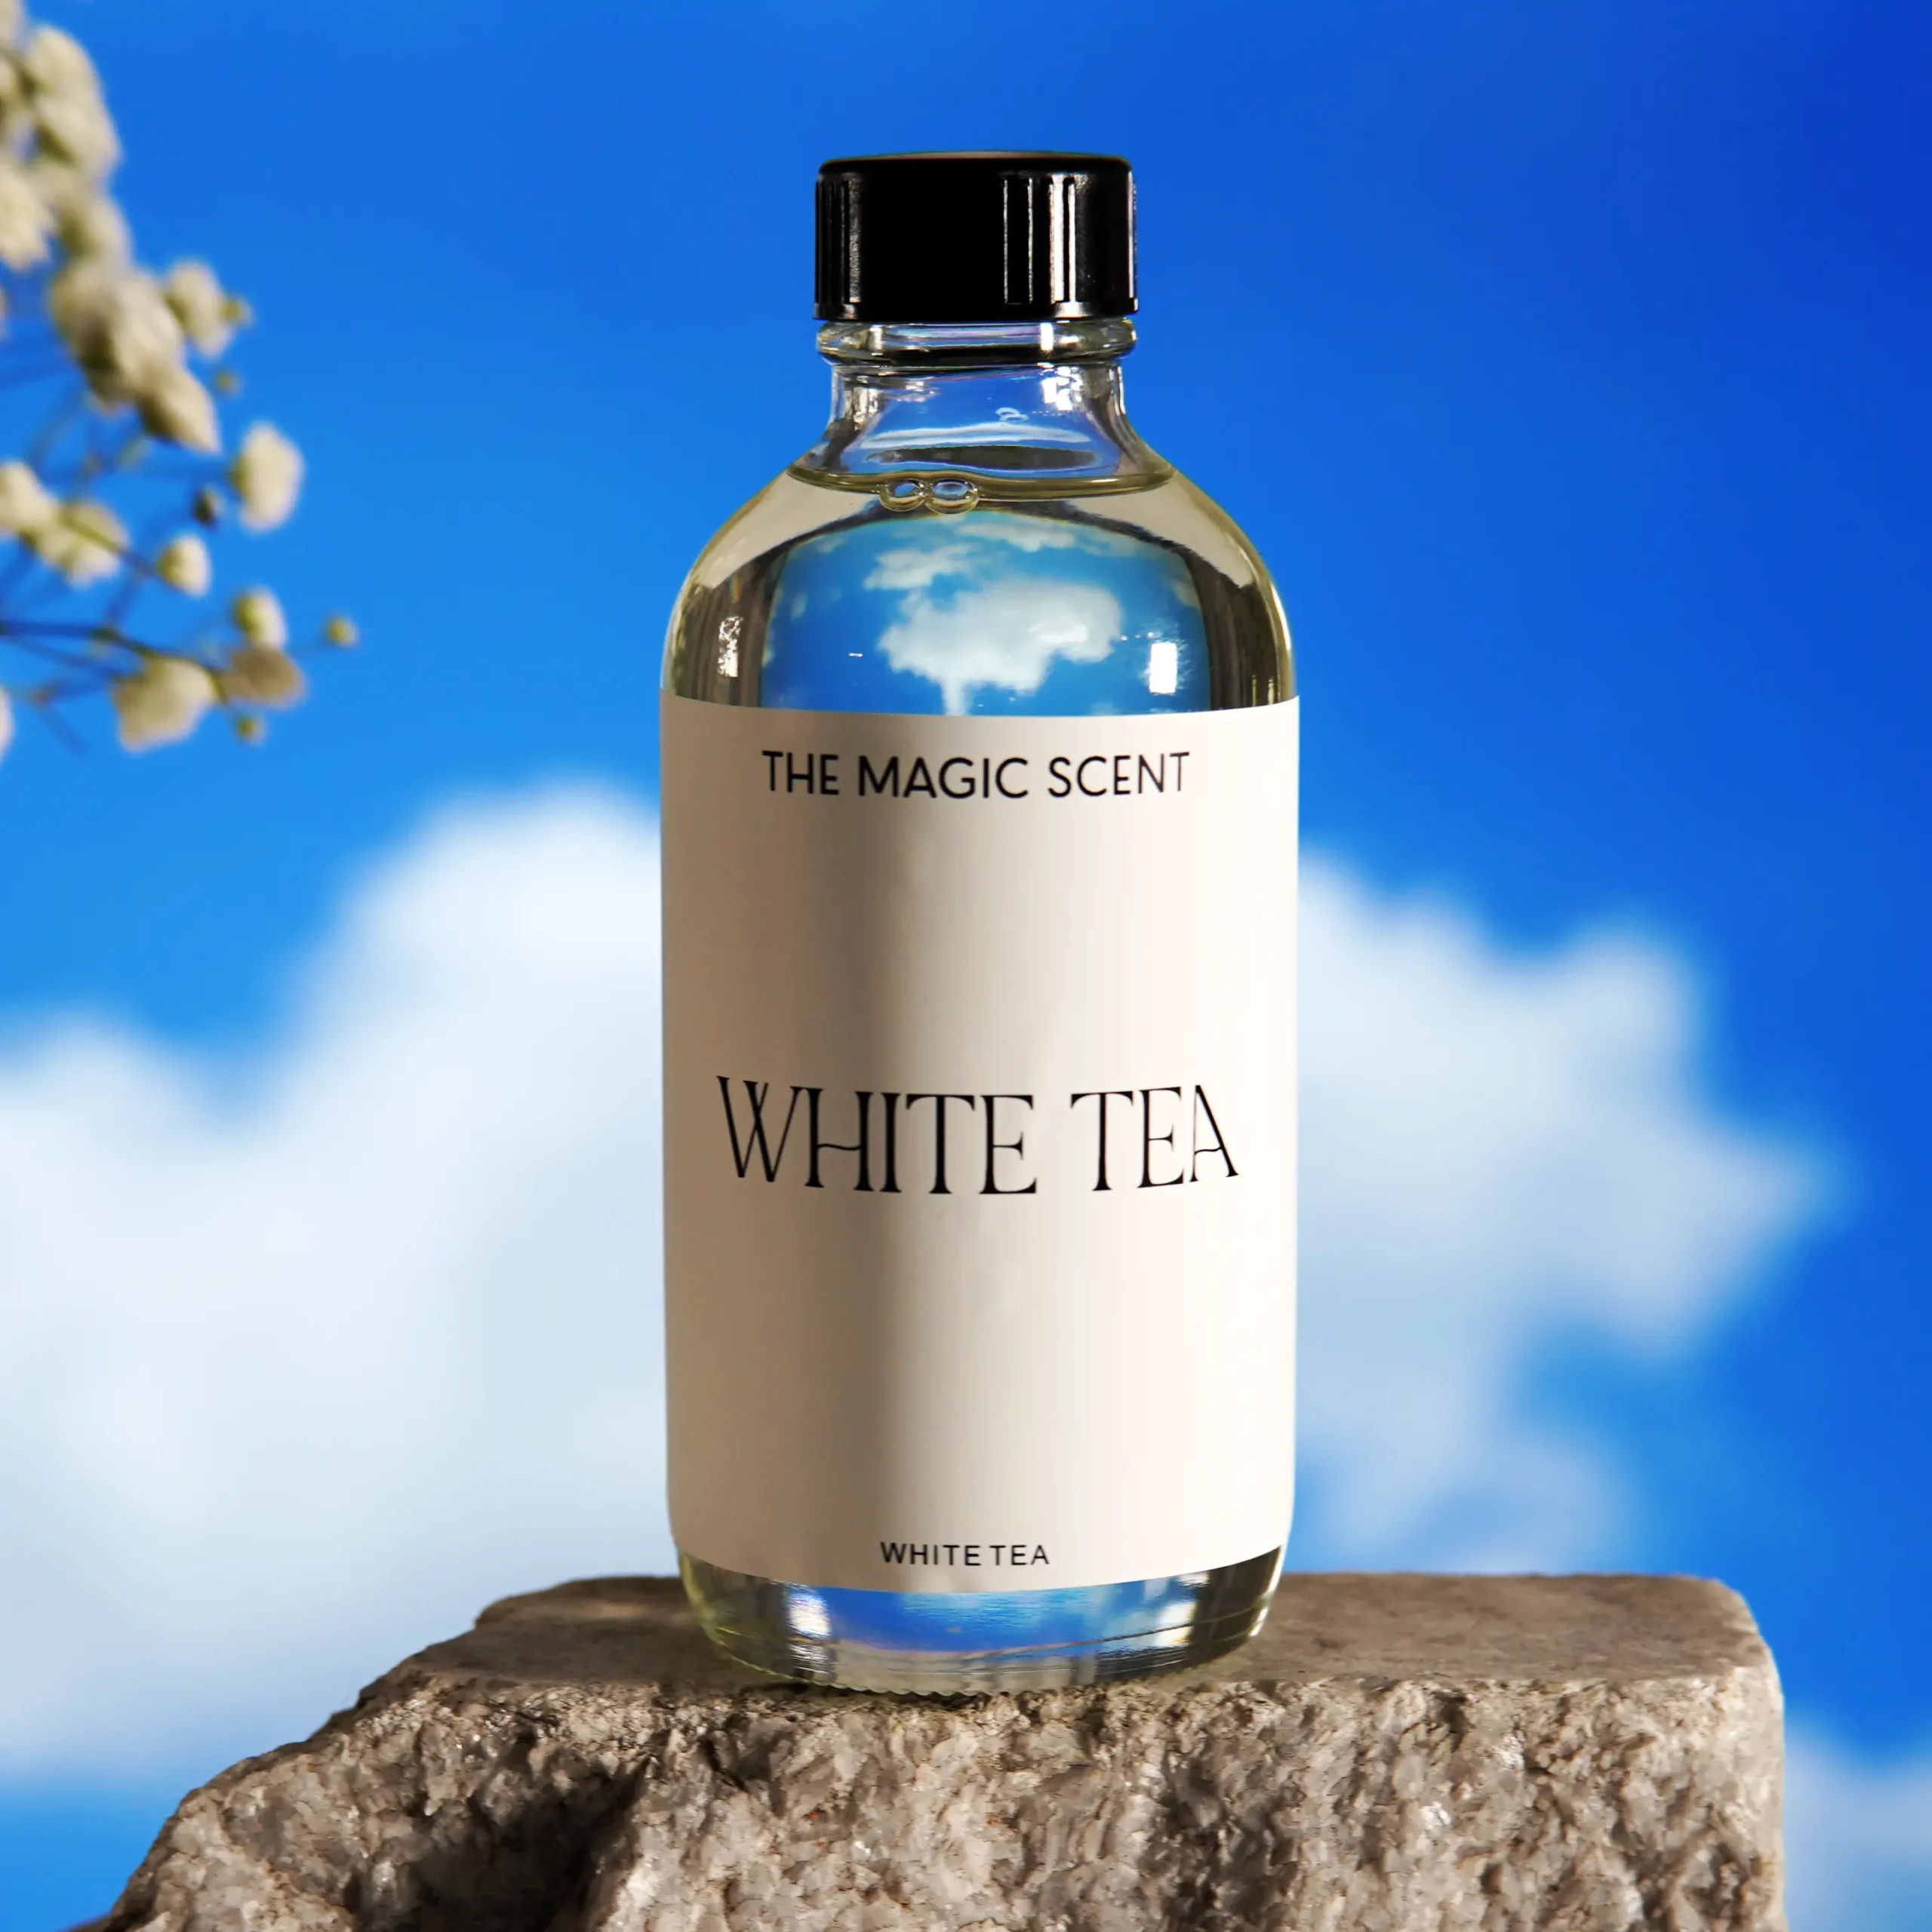  Yethious White Tea Dark Tea Essential Oil For Diffuser White  Tea Essential Oils Organic Oil Fragrance Oil For Aromatherapy